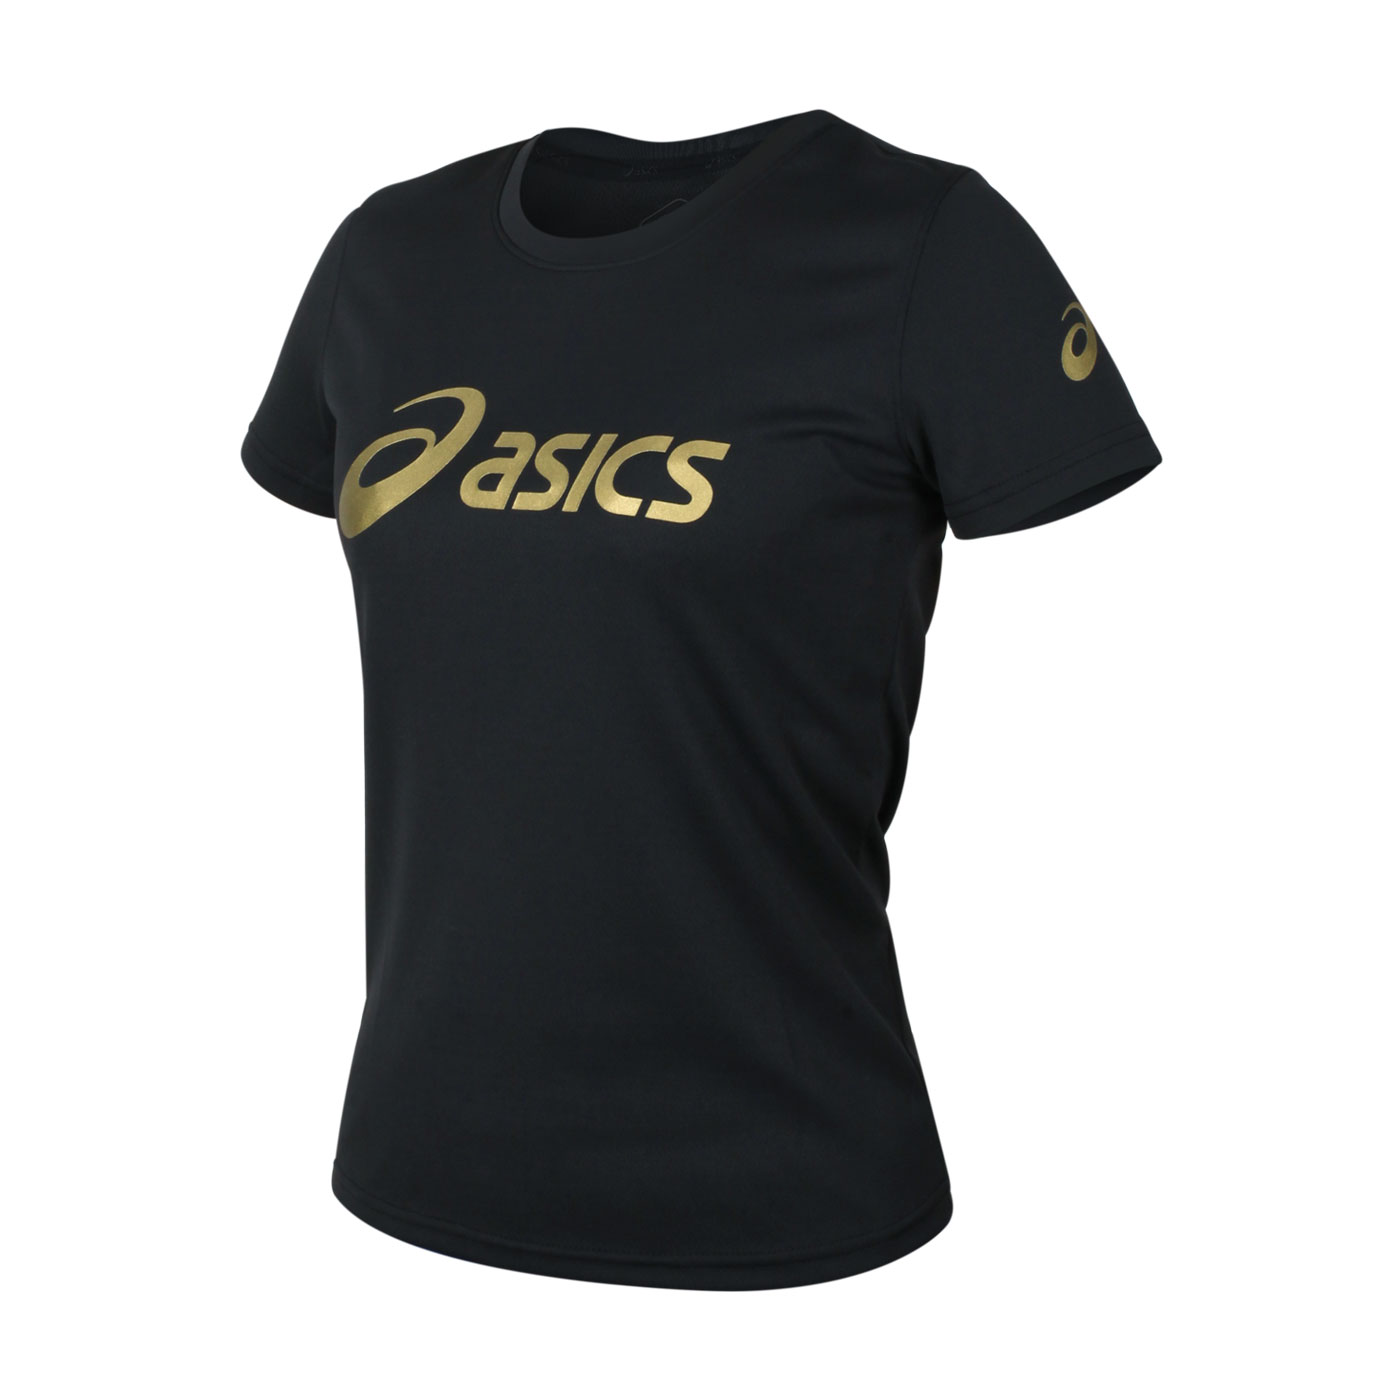 ASICS 女款短袖T恤 K31416-90 - 黑金